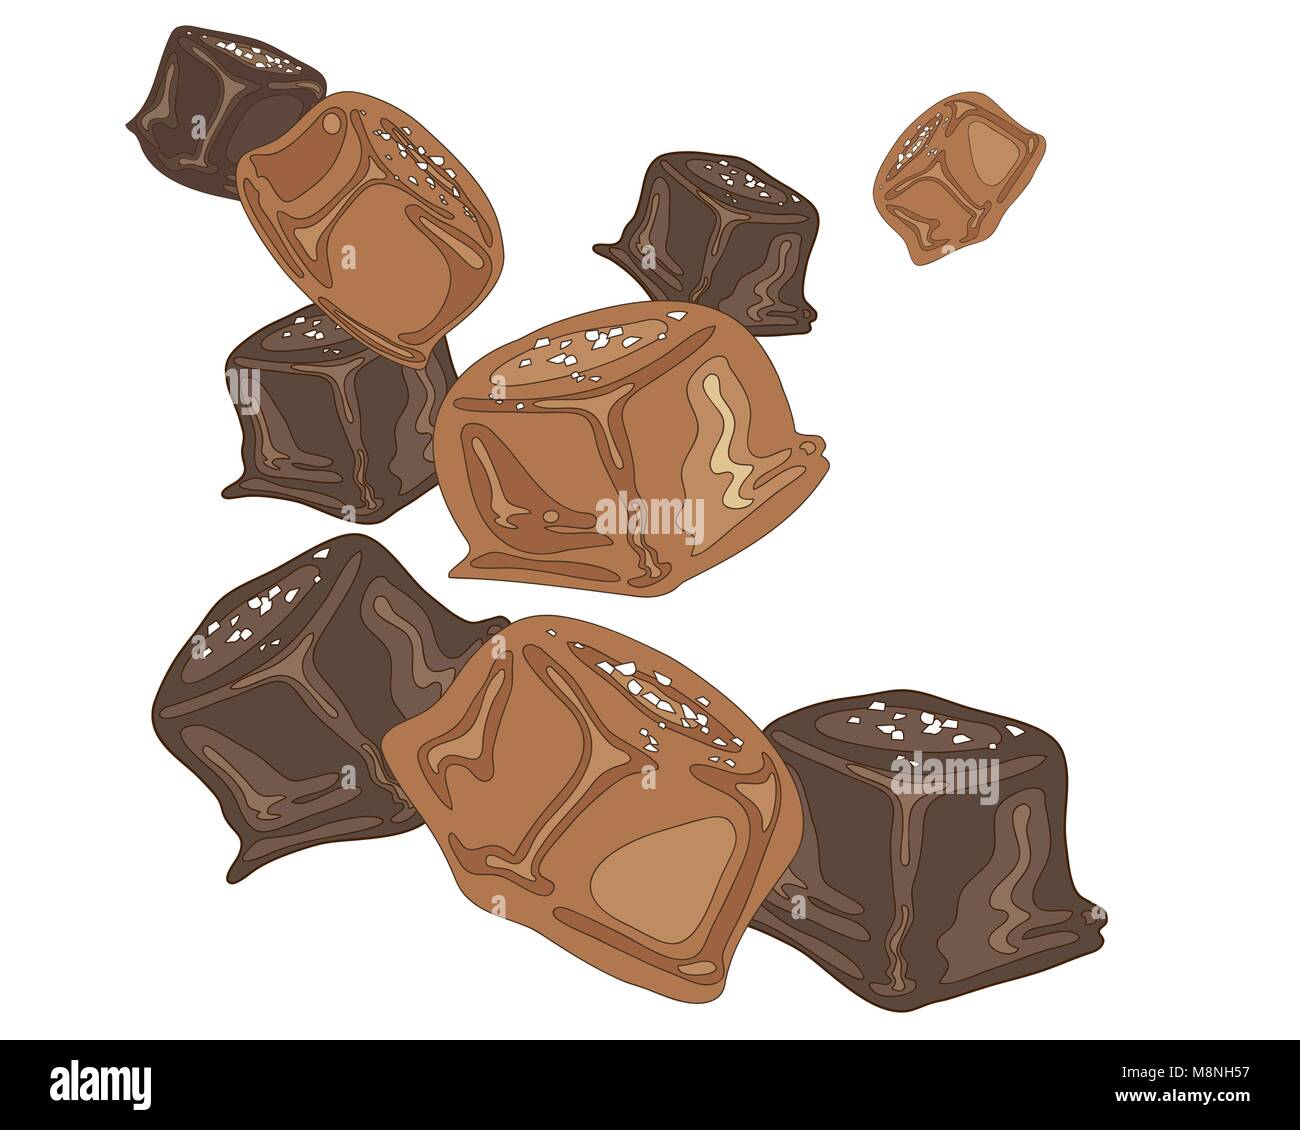 Un vecteur illustration au format eps d'un bonbon au caramel salé pièces sur un fond blanc Illustration de Vecteur